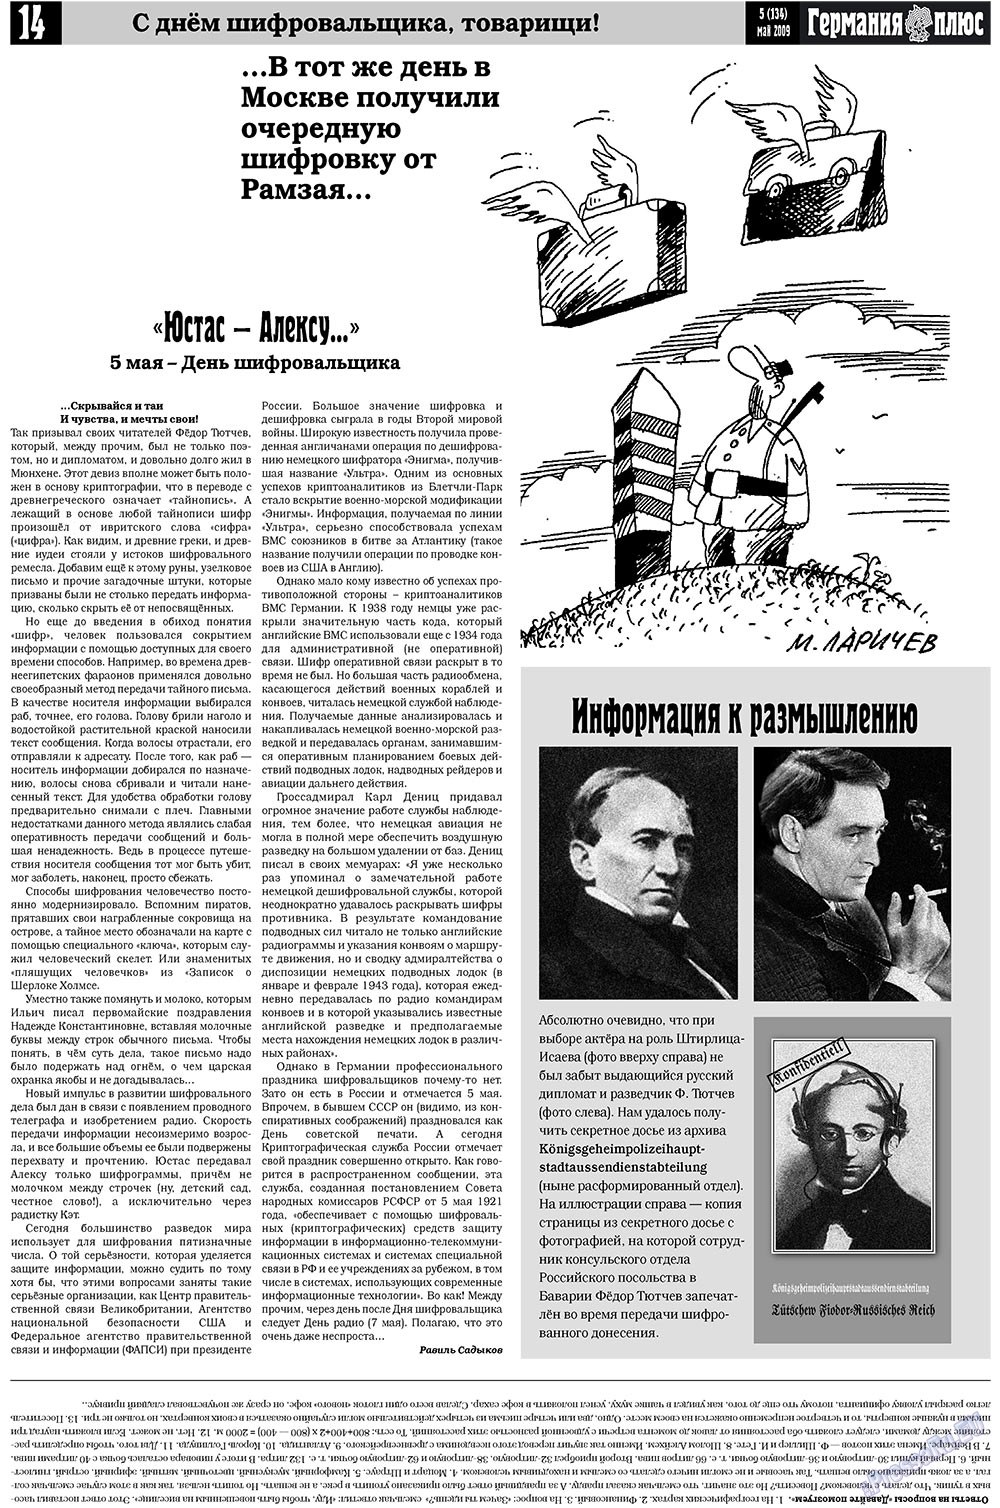 Германия плюс, газета. 2009 №5 стр.18